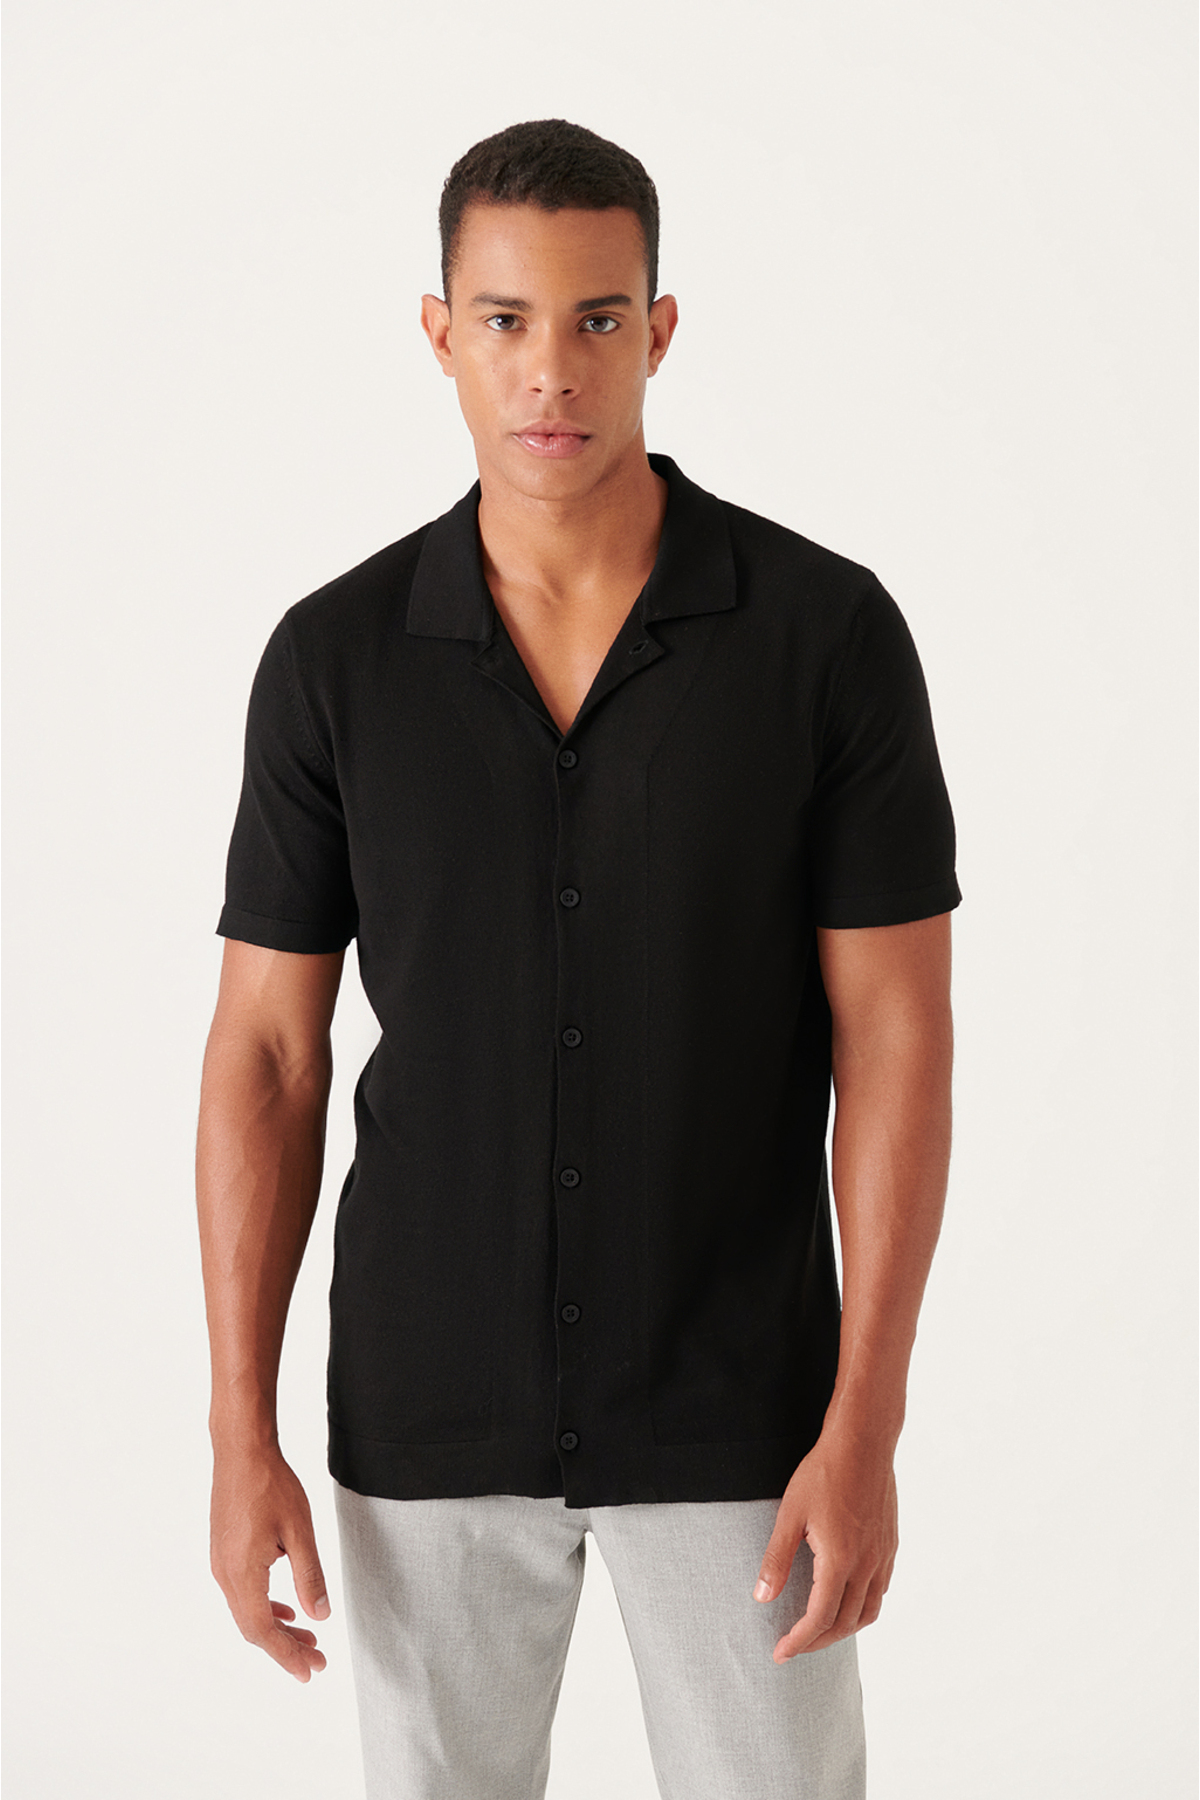 Avva Men's Black Cuban Collar Buttoned Standard Fit Normal Cut Knitwear T-shirt